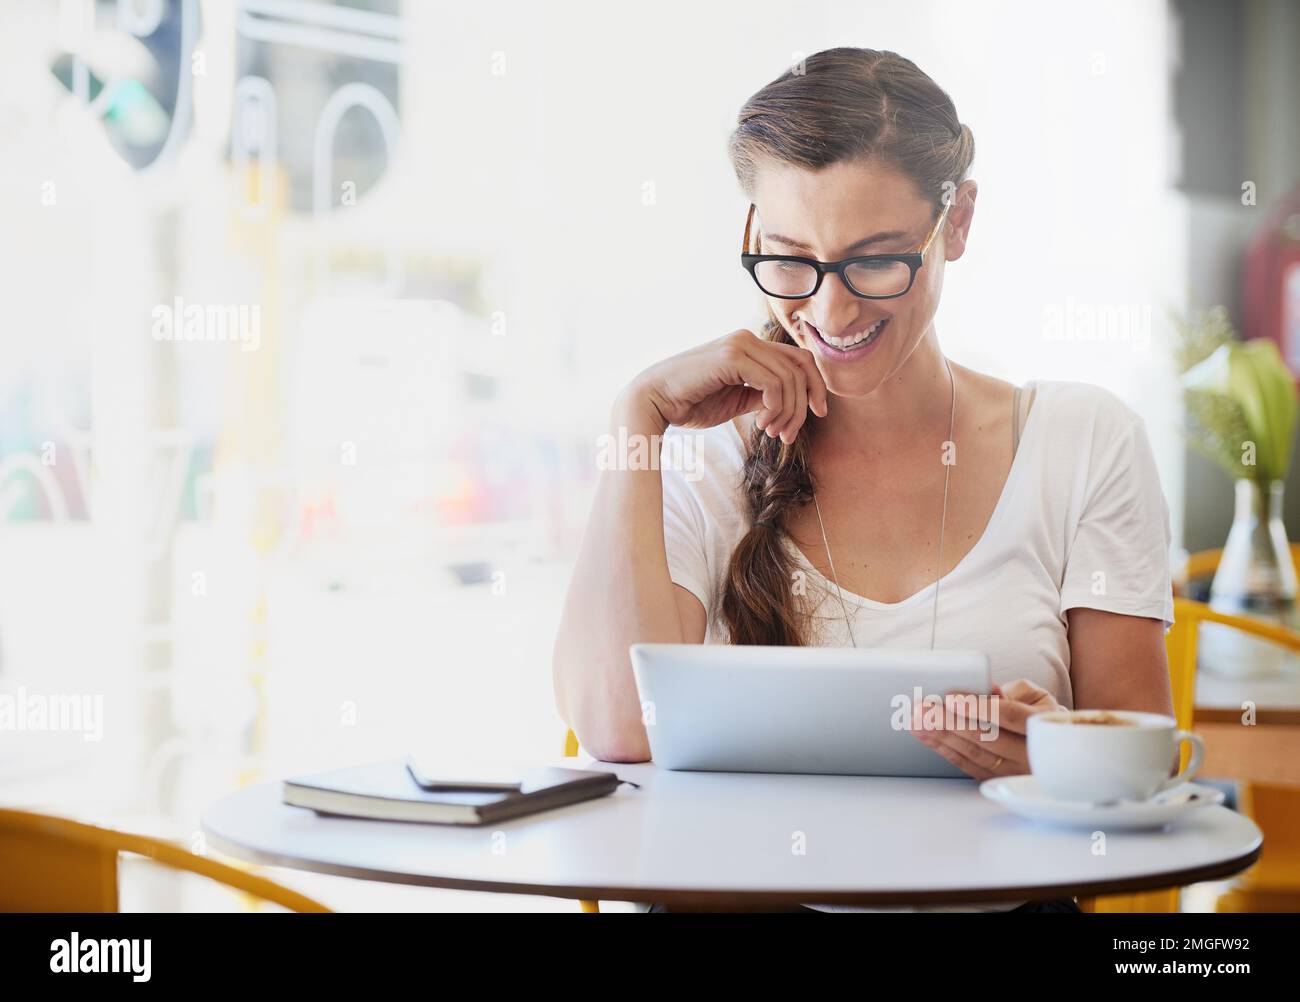 Vieni a bere un caffè e a utilizzare il wifi. una giovane donna rilassata che usa la sua tavoletta mentre beve caffè nel suo caffè preferito. Foto Stock